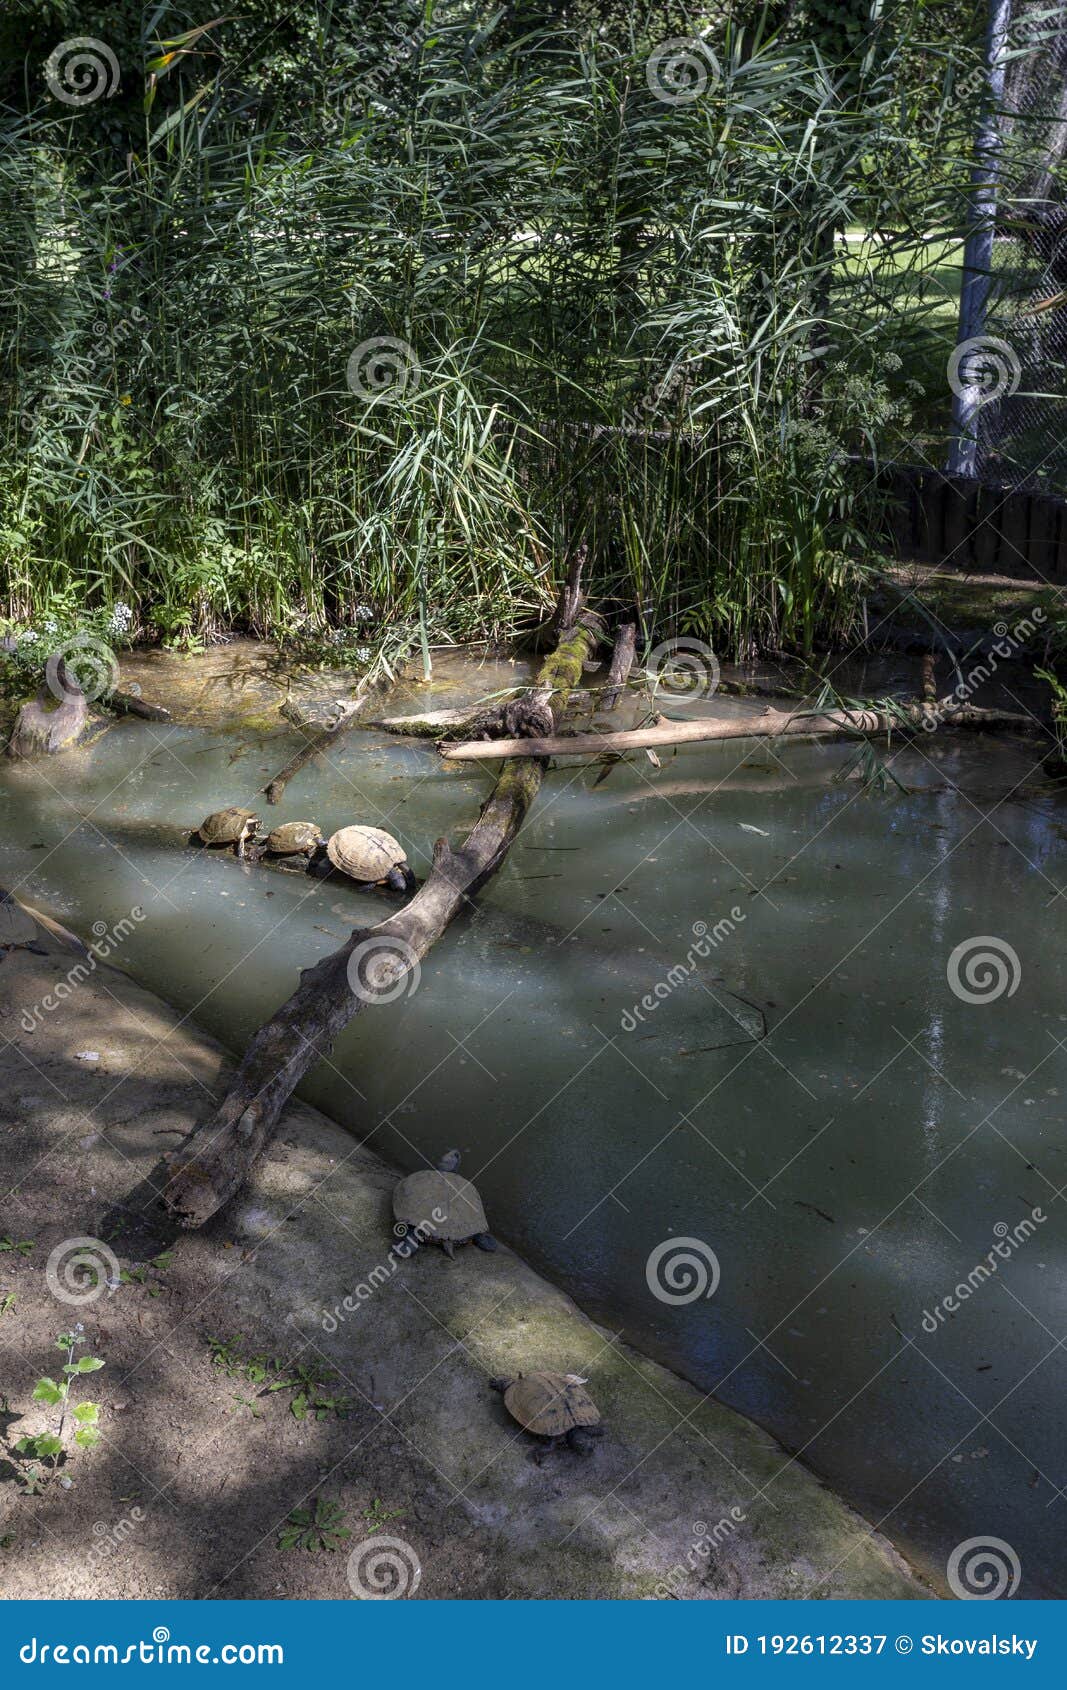 turtles in the lake tisza ecocentre in poroszlo